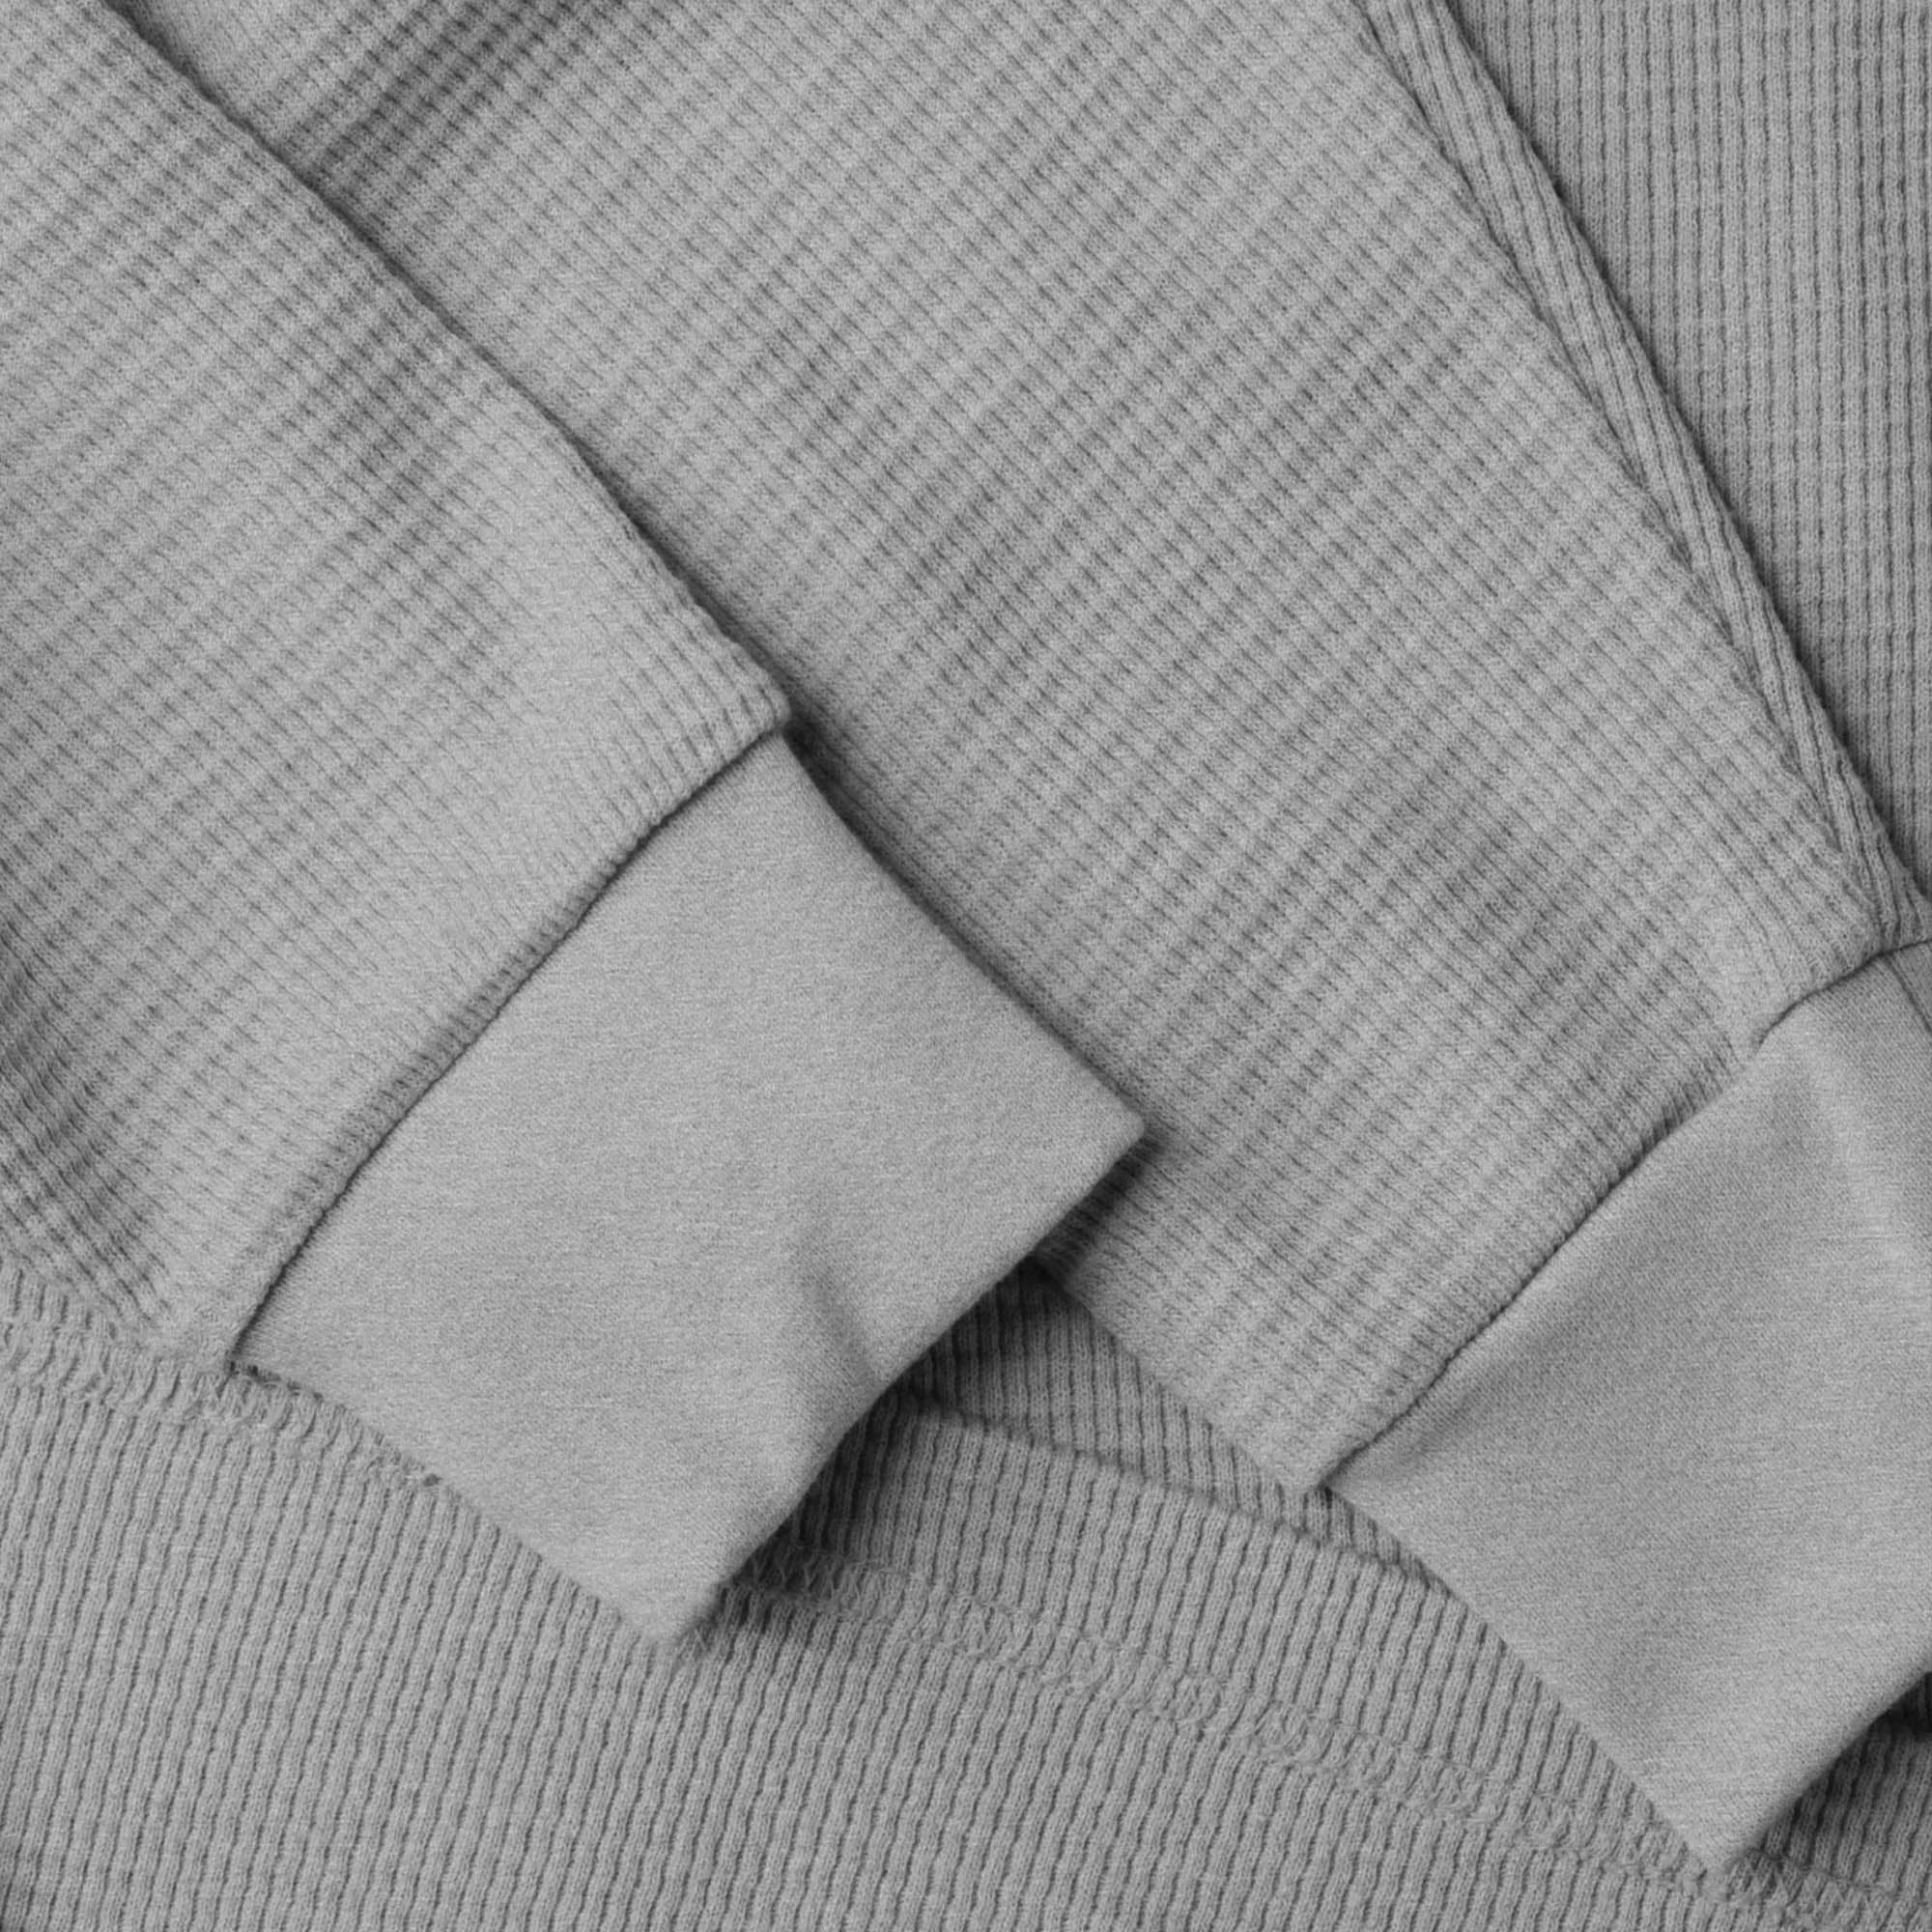 thermal shirt_thermal long sleeve_mens thermal shirt_long sleeve thermal shirts_mens thermal long sleeve_thermal clothing mens_Heather Gray